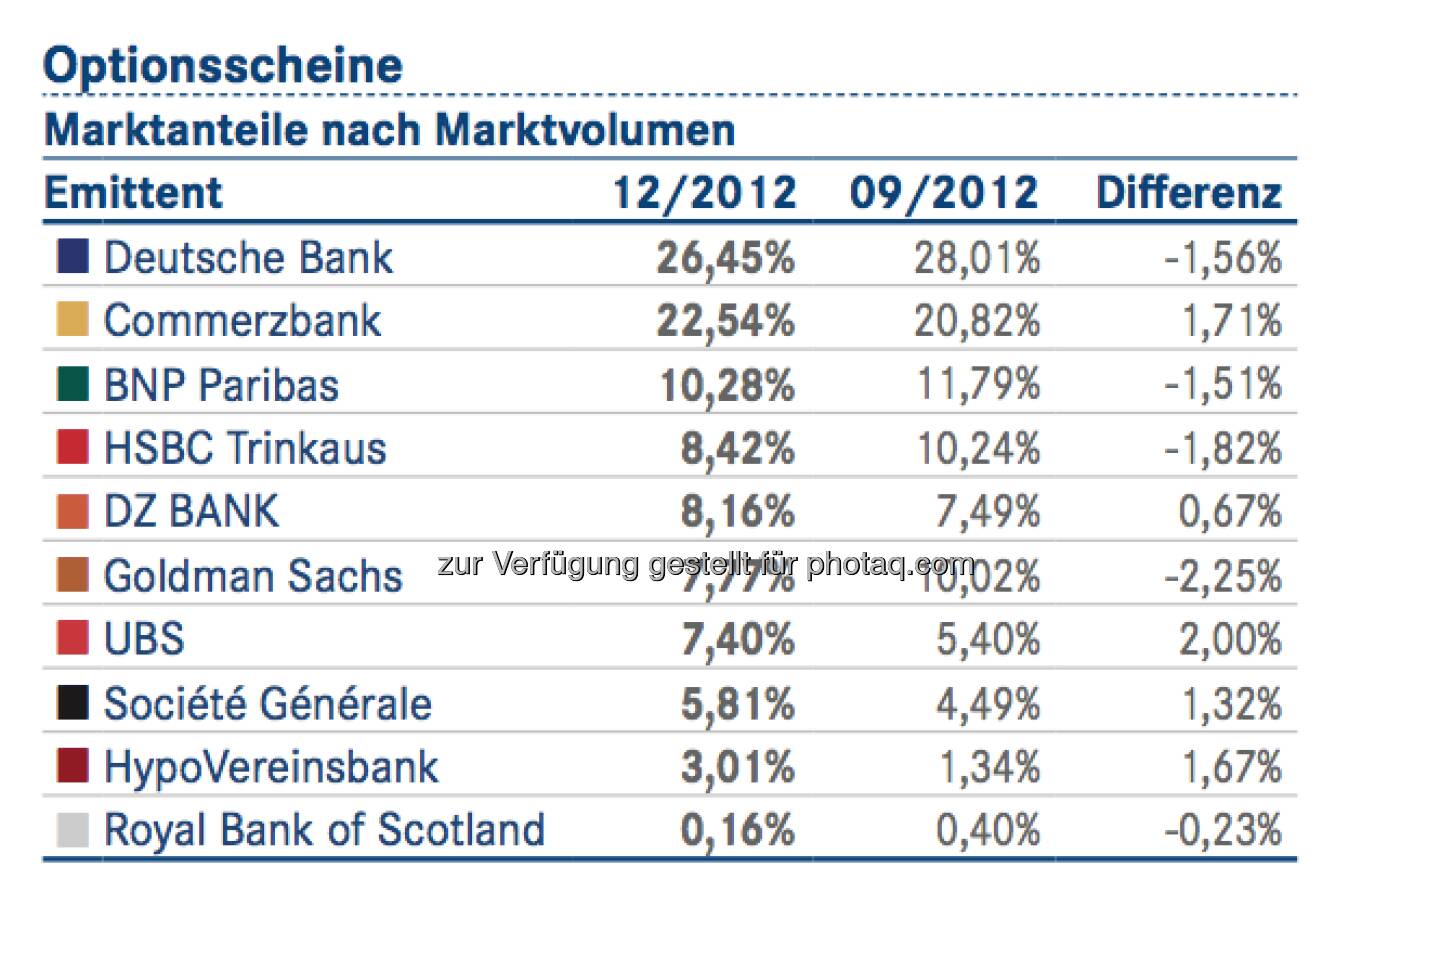 DDV-Statistik Ende 2012: Deutsche Bank bei Optionsscheinen vorne